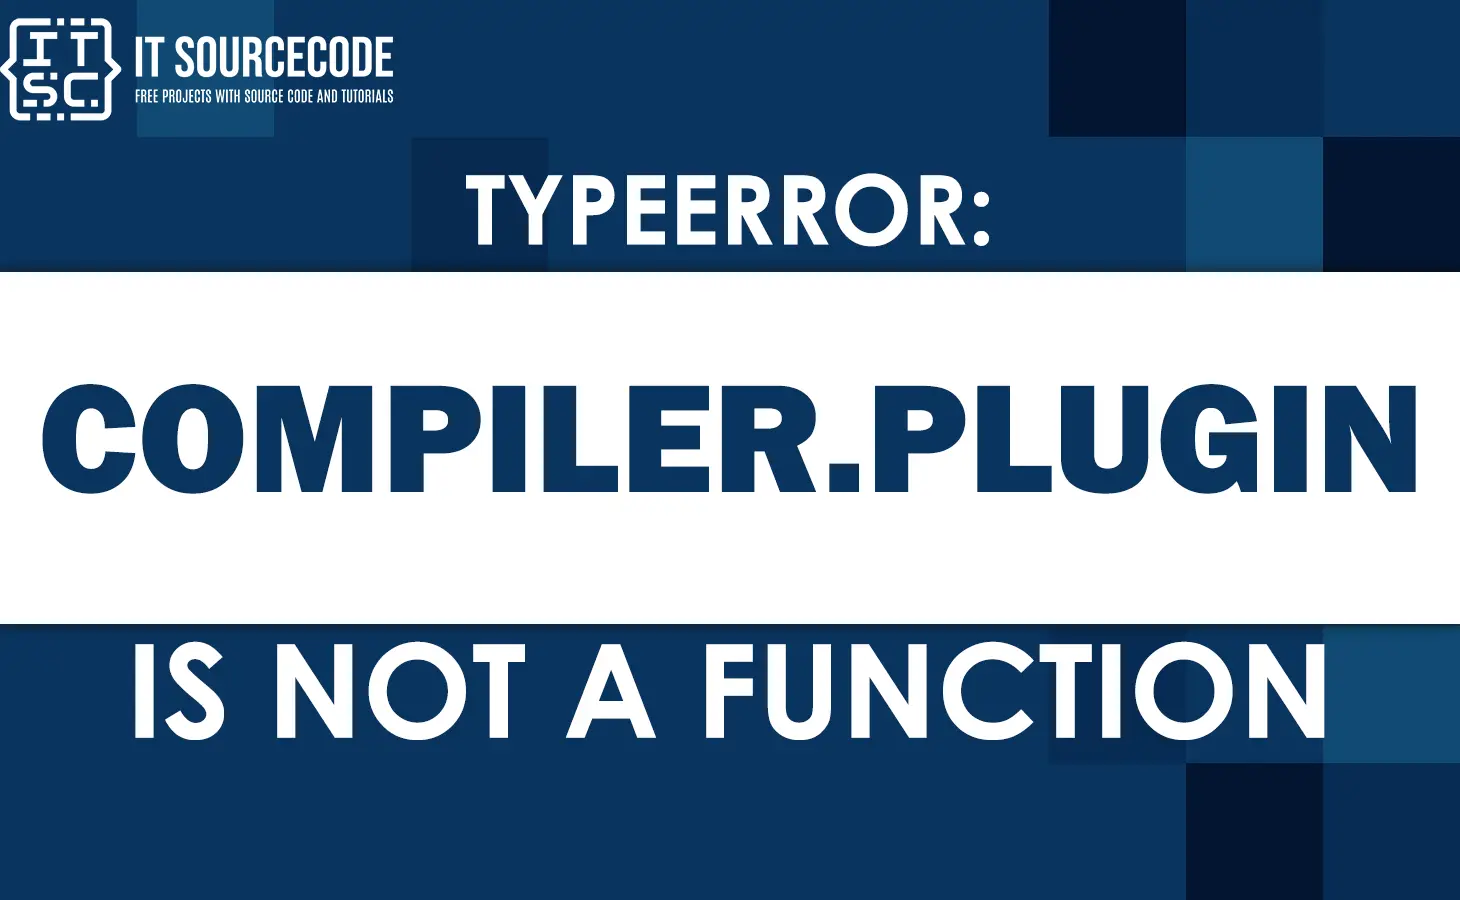 Typeerror compiler.plugin is not a function